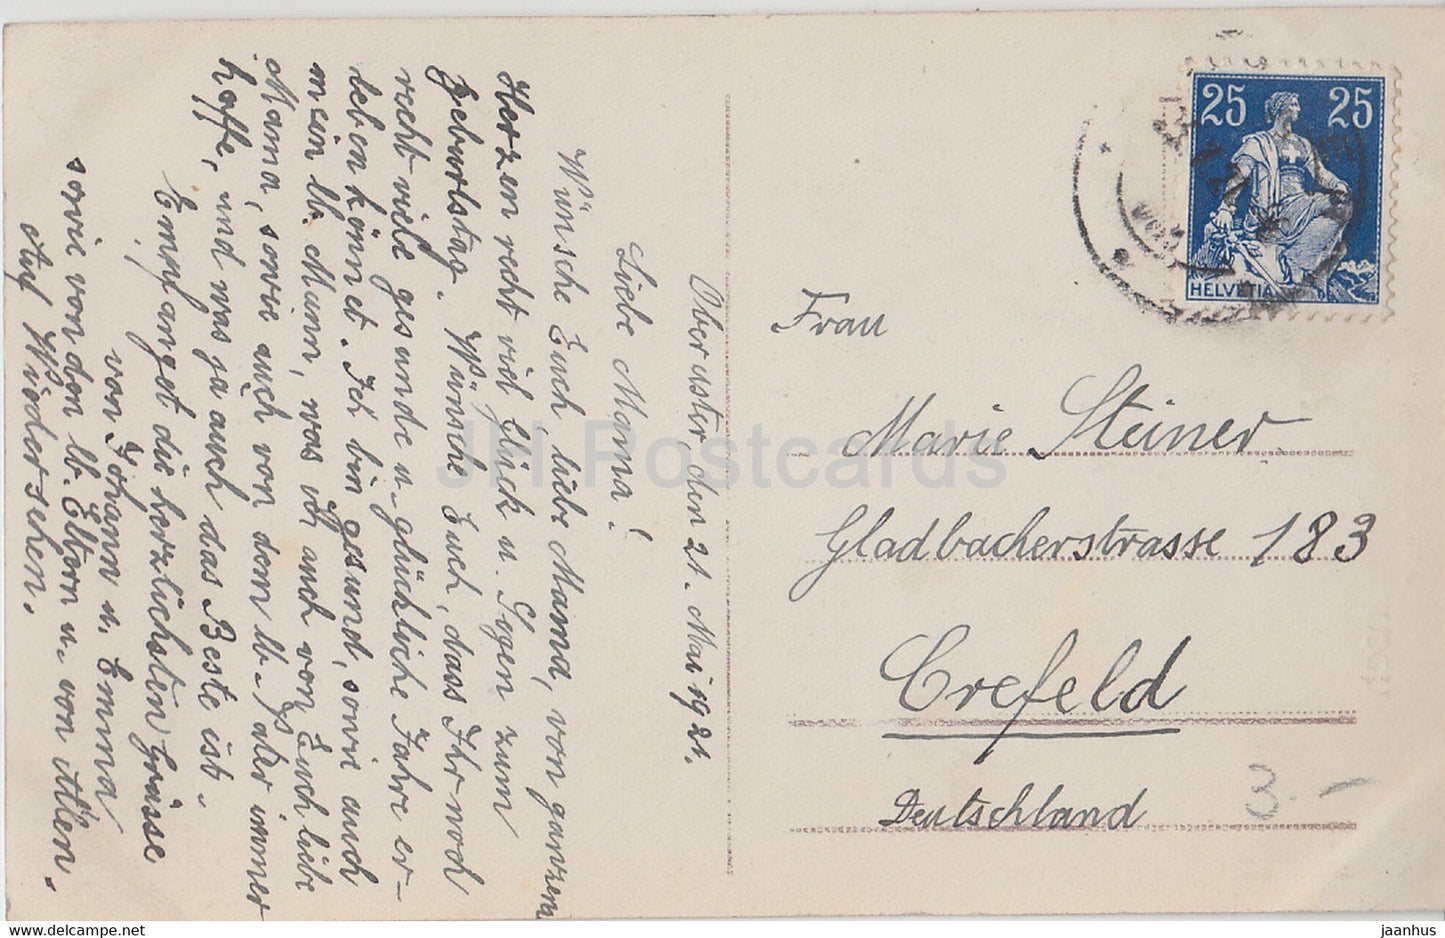 Birthday Greeting Card - Herzlichen Gluckwunsch zum Geburtstage - boy - HB 8275/6 - old postcard - 1921 - Germany - used